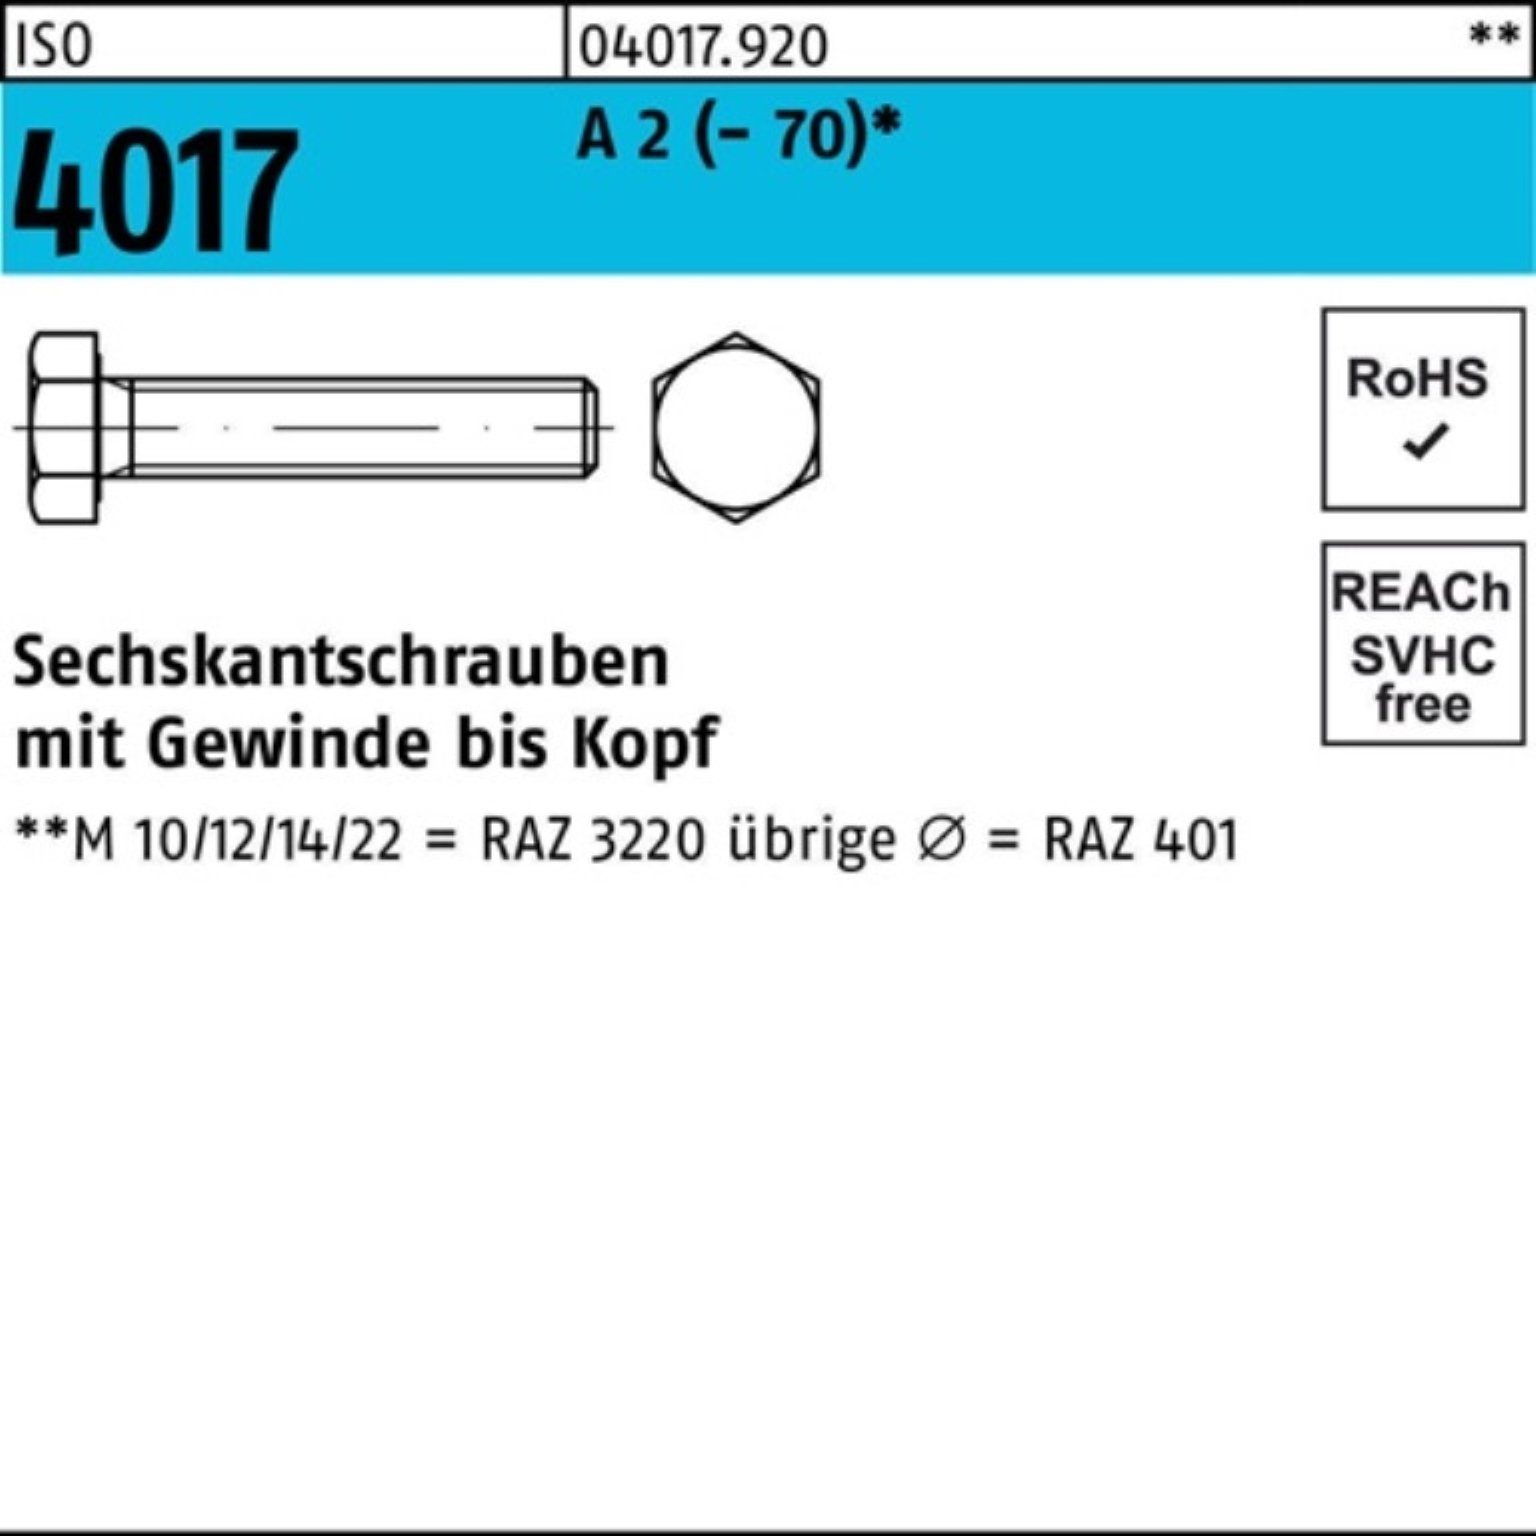 Bufab Sechskantschraube 100er Pack Sechskantschraube ISO 4017 VG M18x 80 A 2 (70) 25 Stück